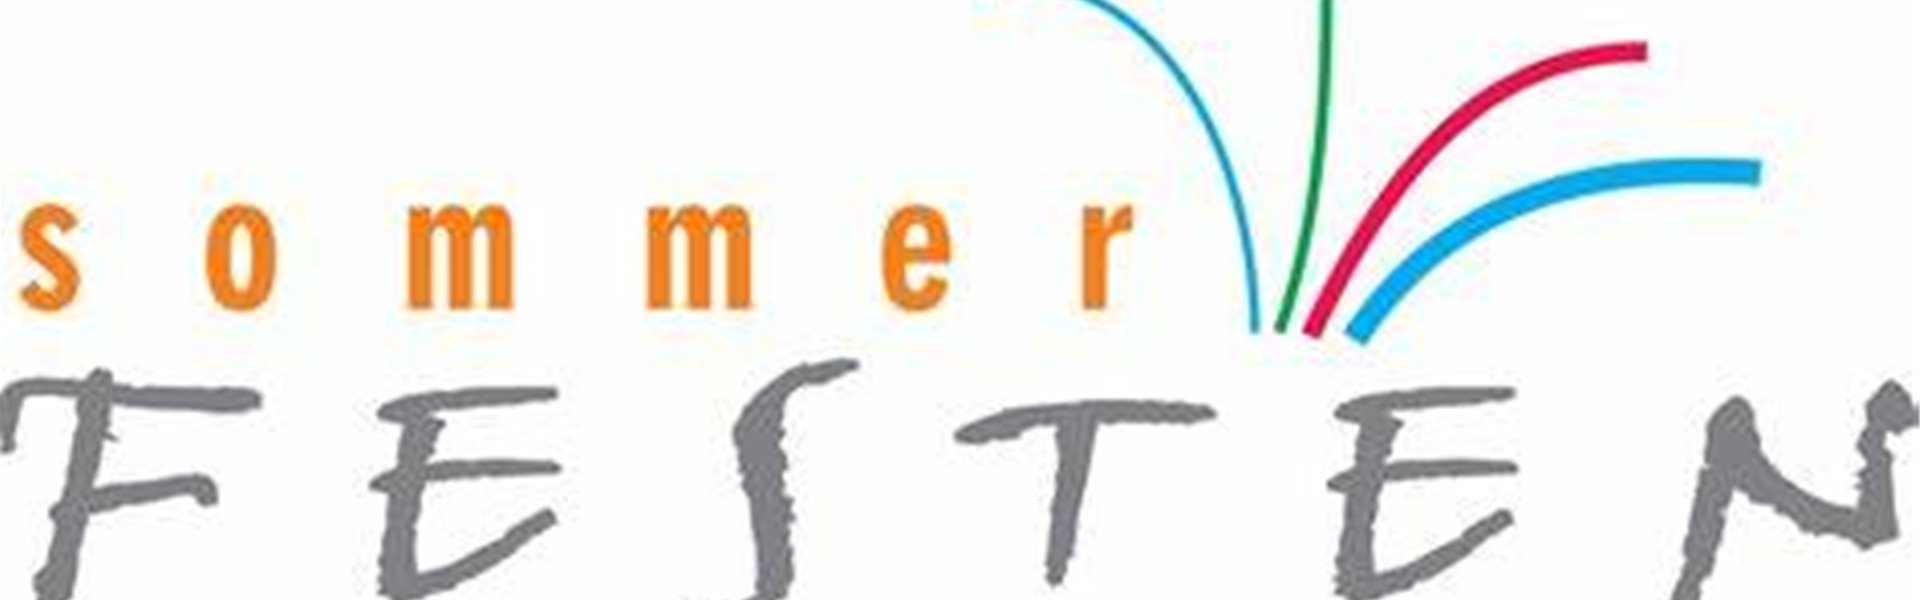 sommerfest-logo